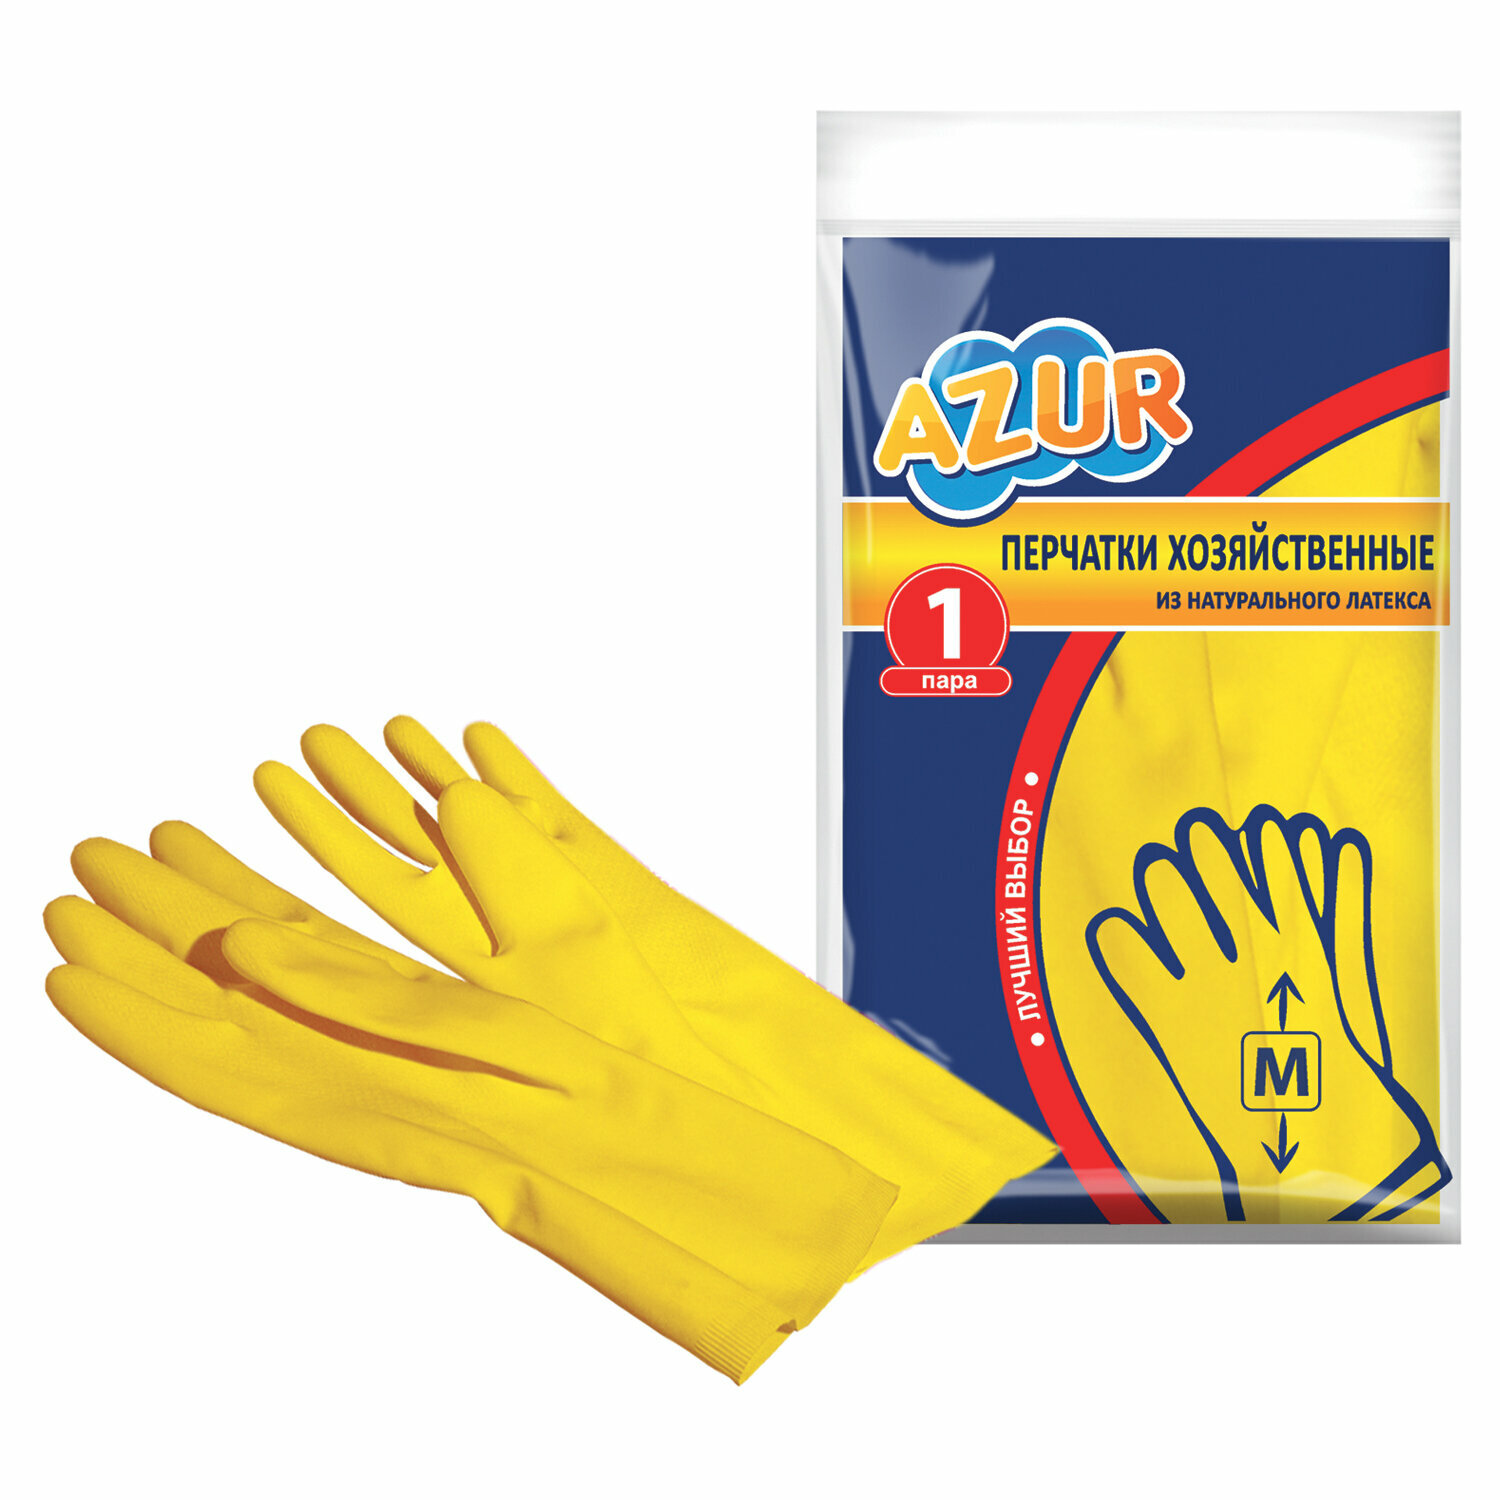 Перчатки с рифлеными пальцами Azur, размер M, 12 пар